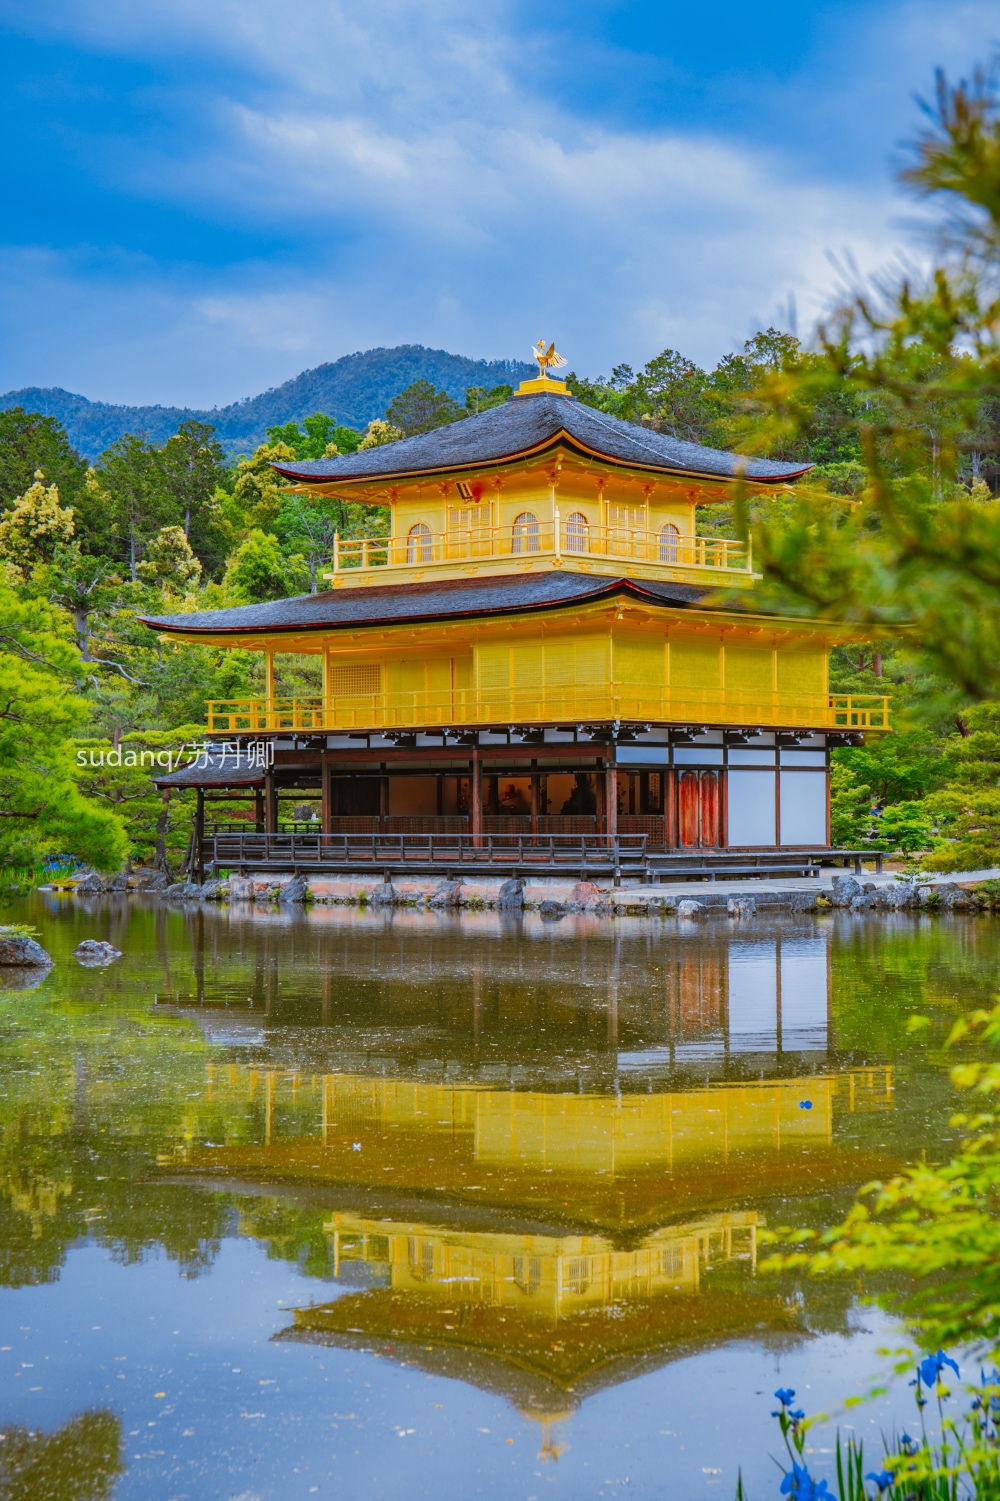 原创日本最美的世界文化遗产之一:金阁寺,聪明的一休在此擒虎